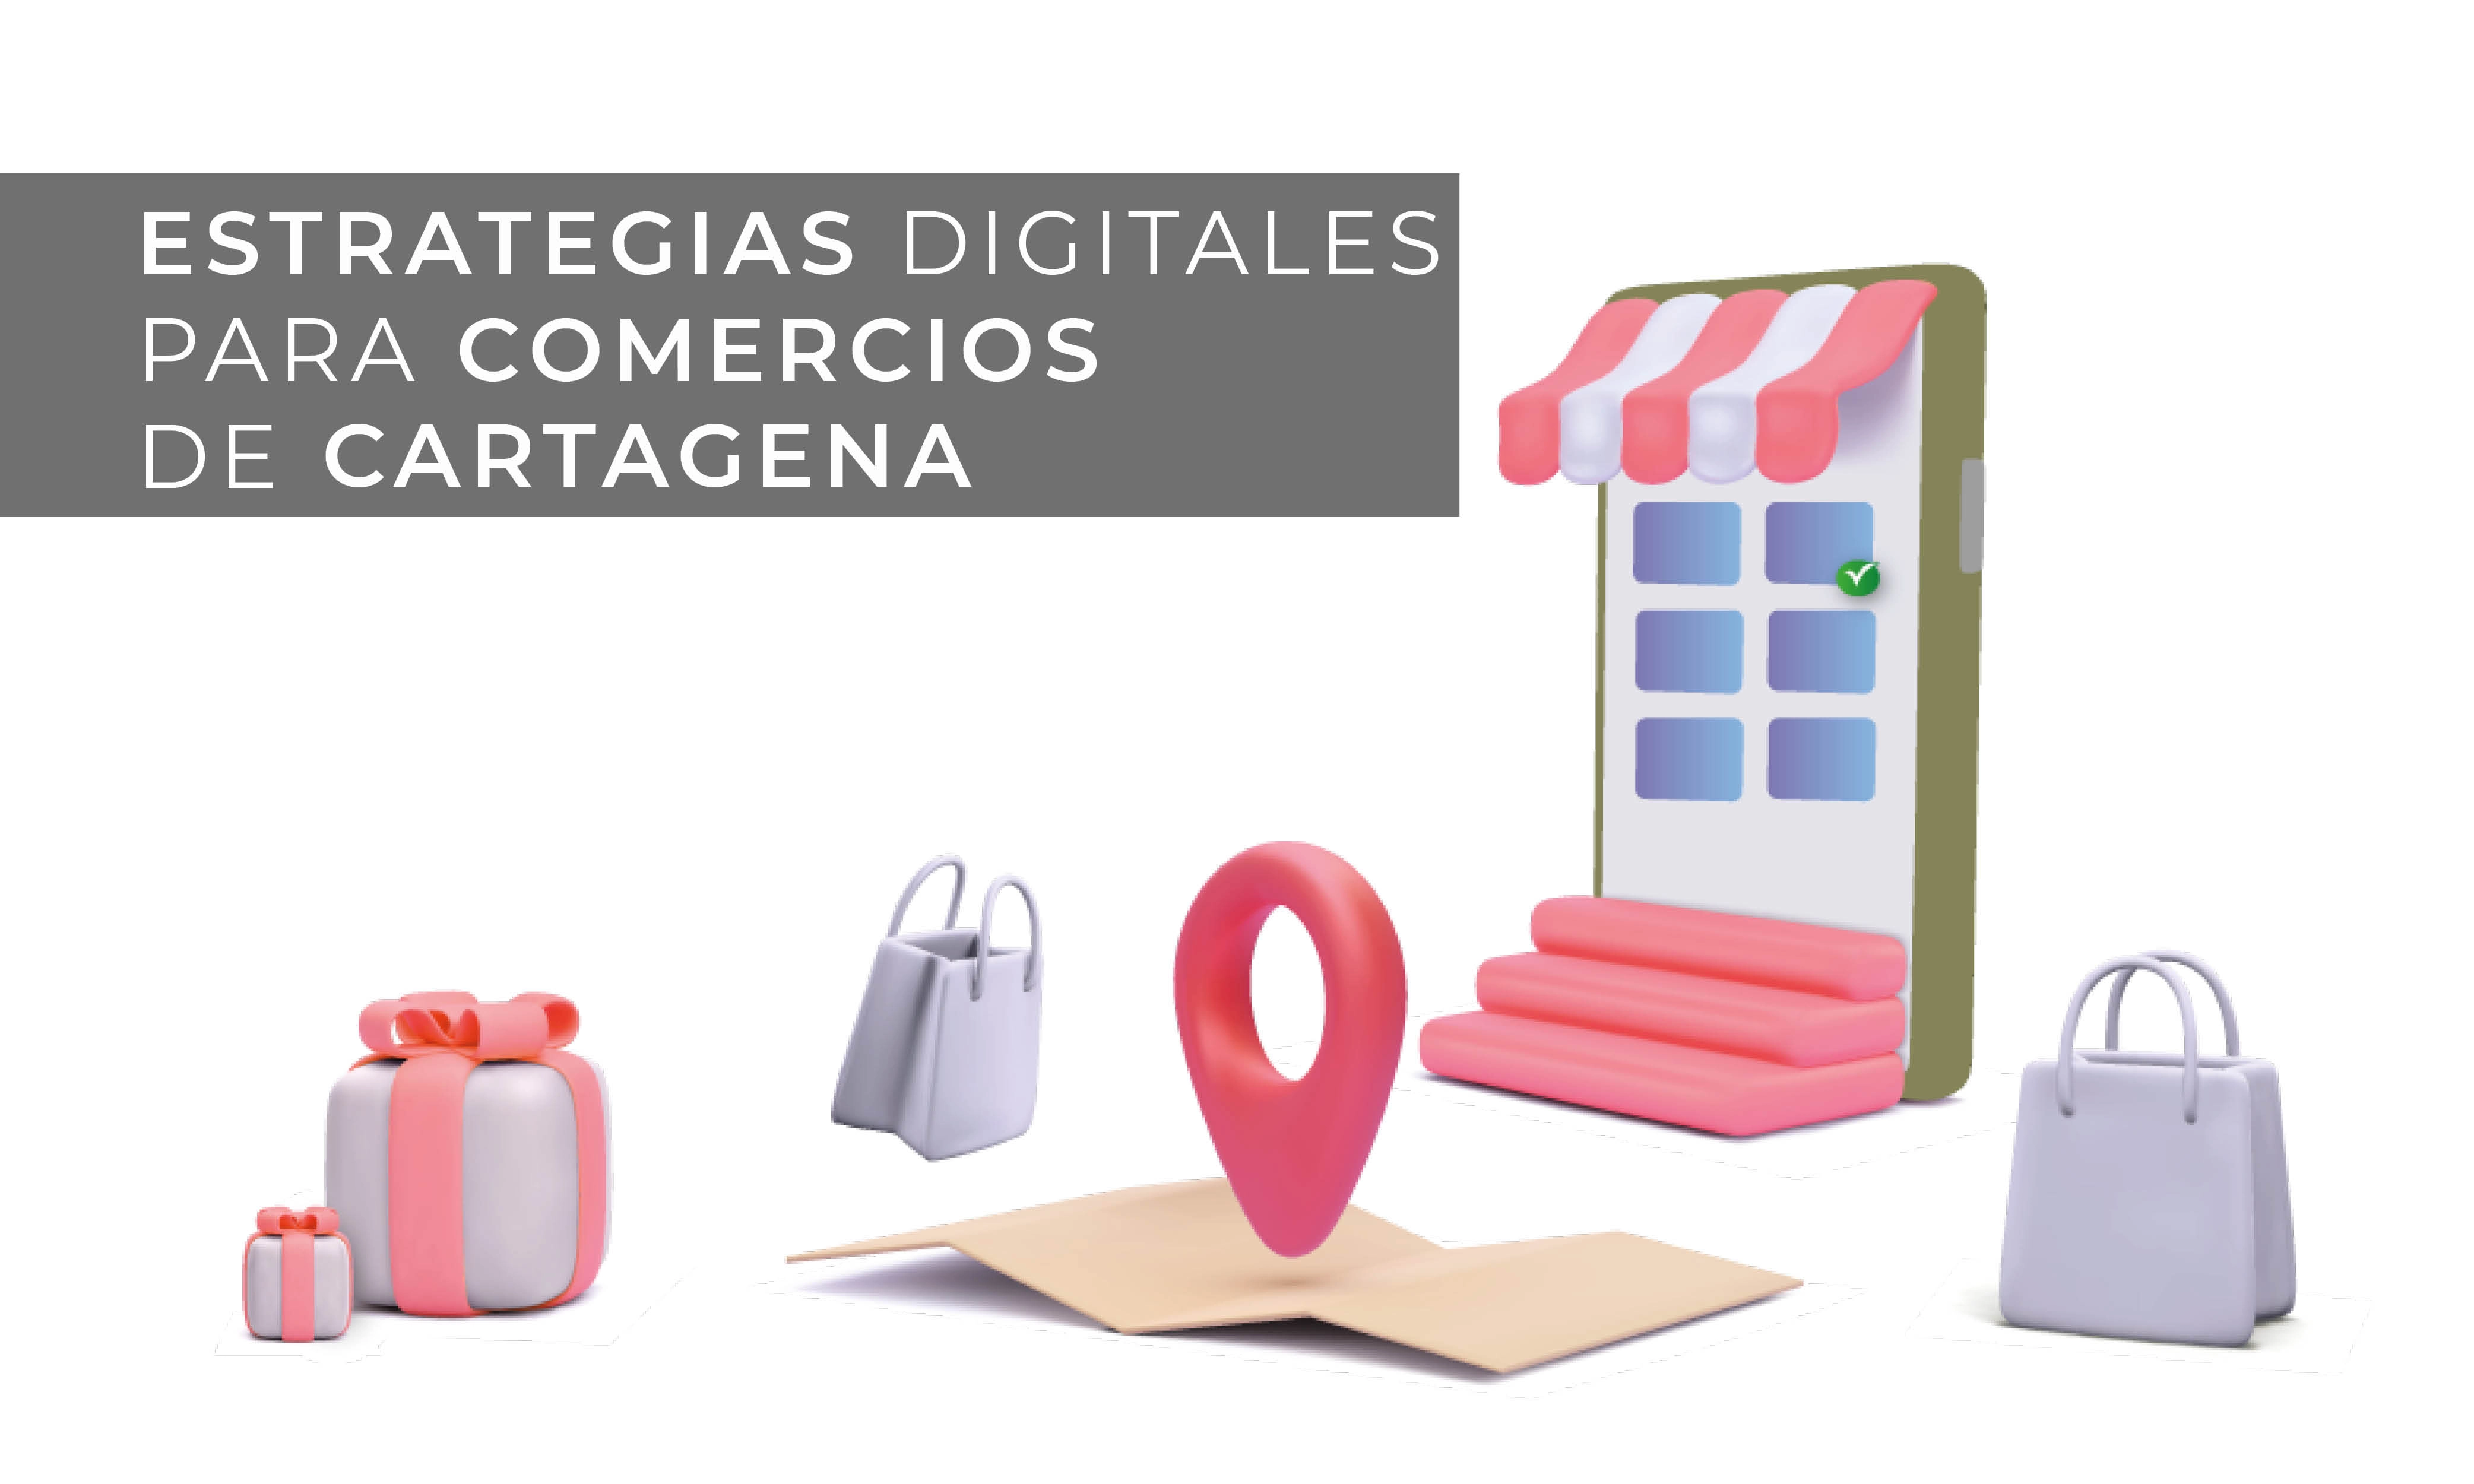 Estrategias digitales para emprendedores y pequeñas o medianas empresas Cartagena